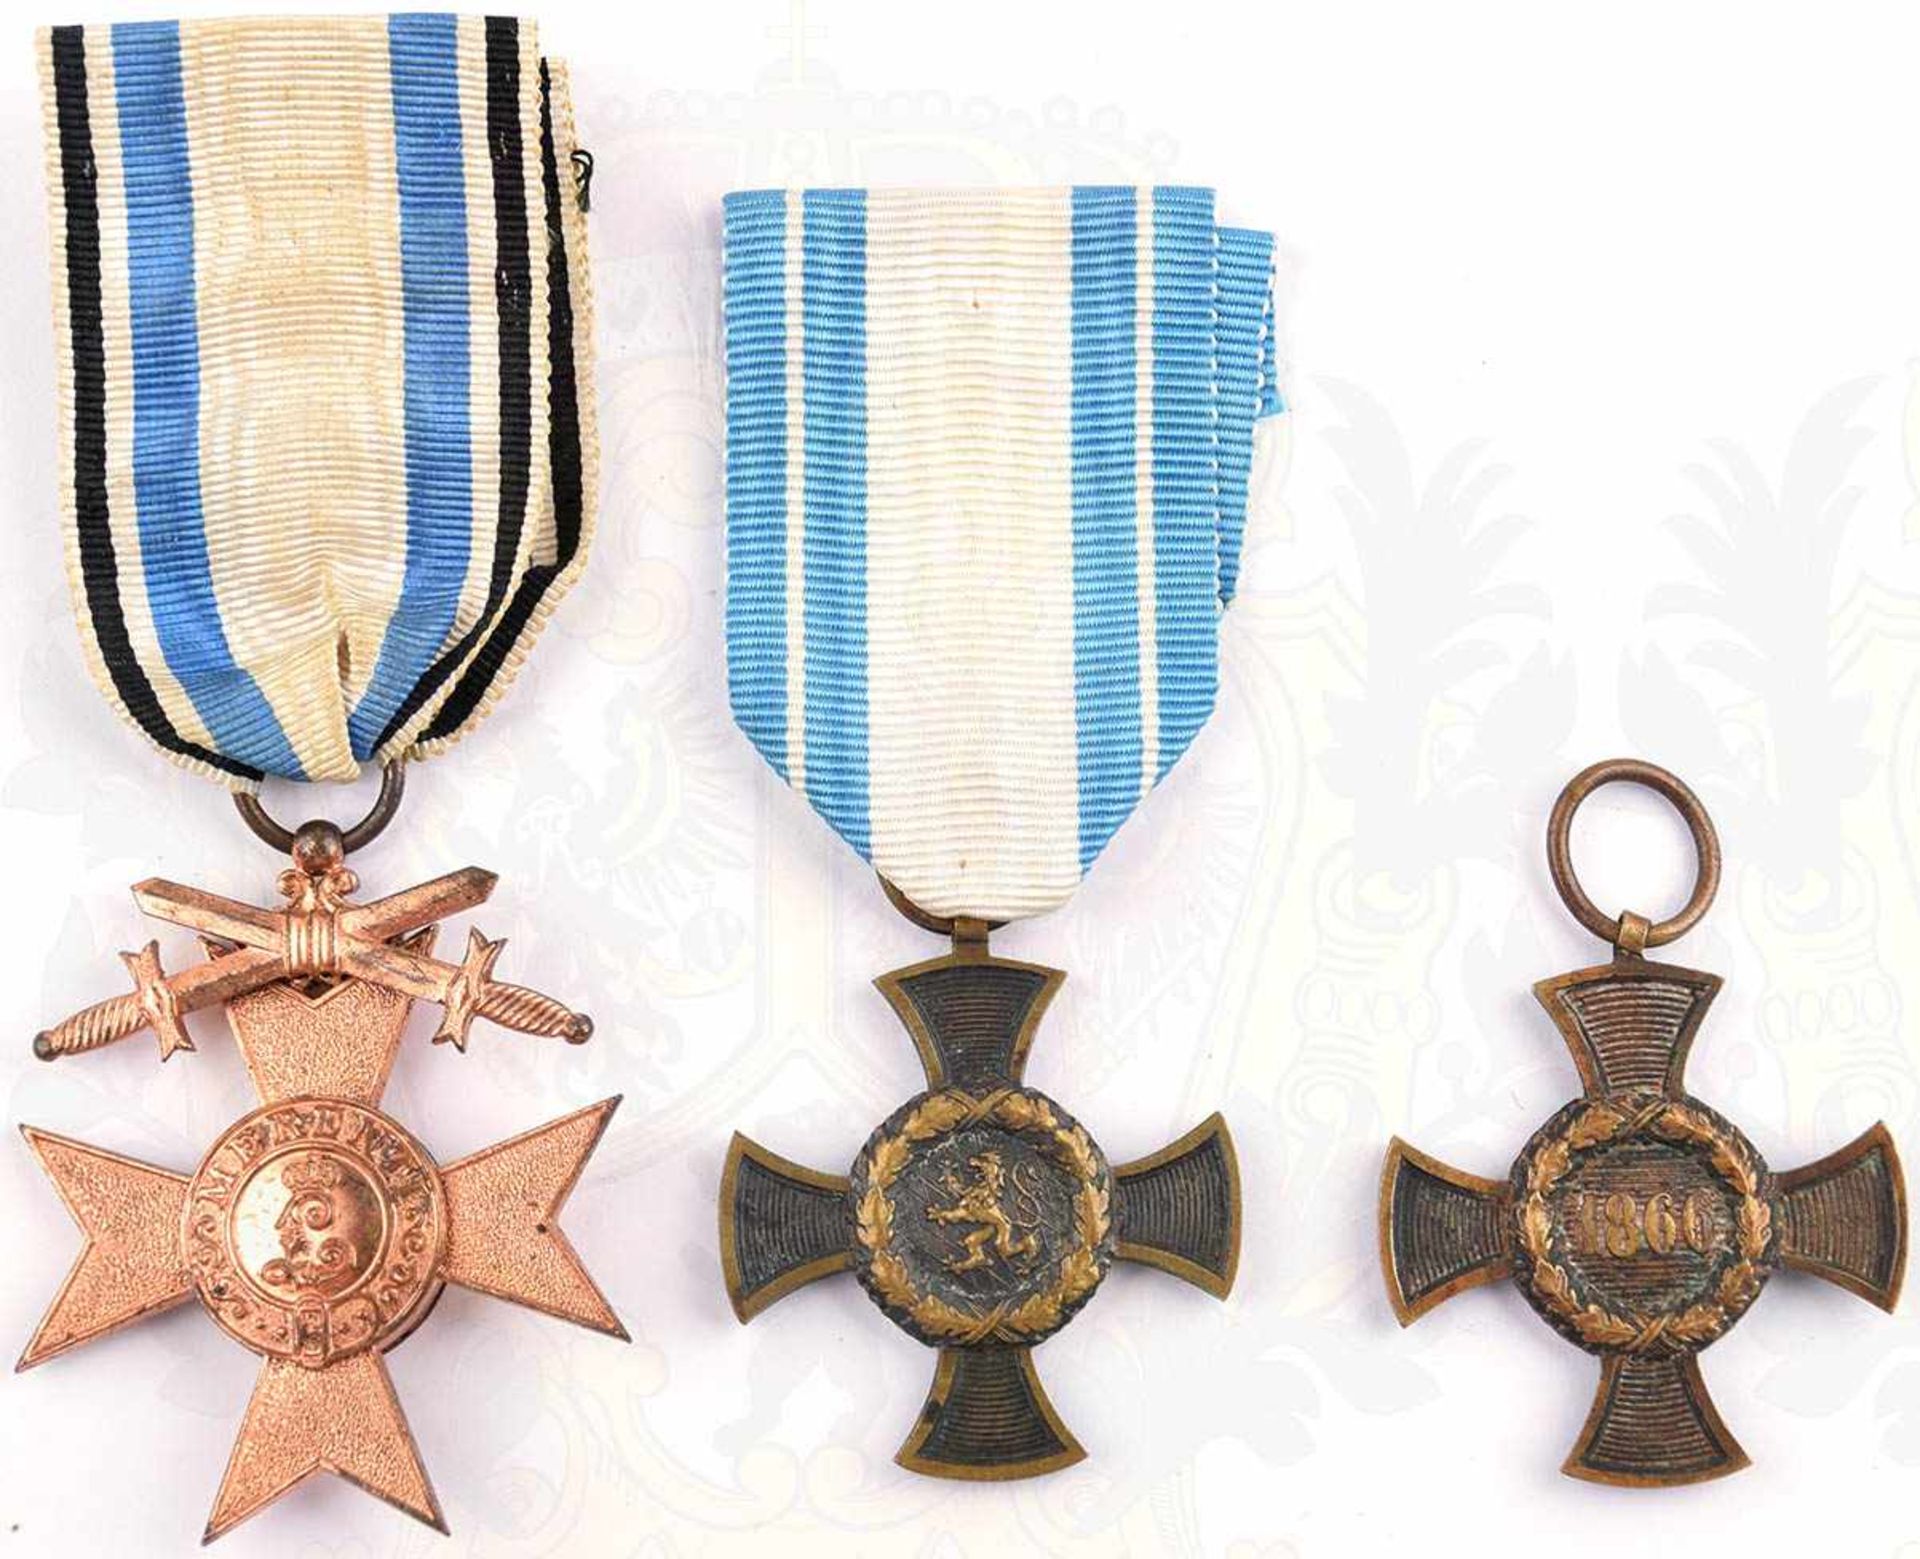 3 AUSZEICHNUNGEN, Militärverdienstkreuz 3. Klasse m. Schwertern, Buntmetall, am Band; 2